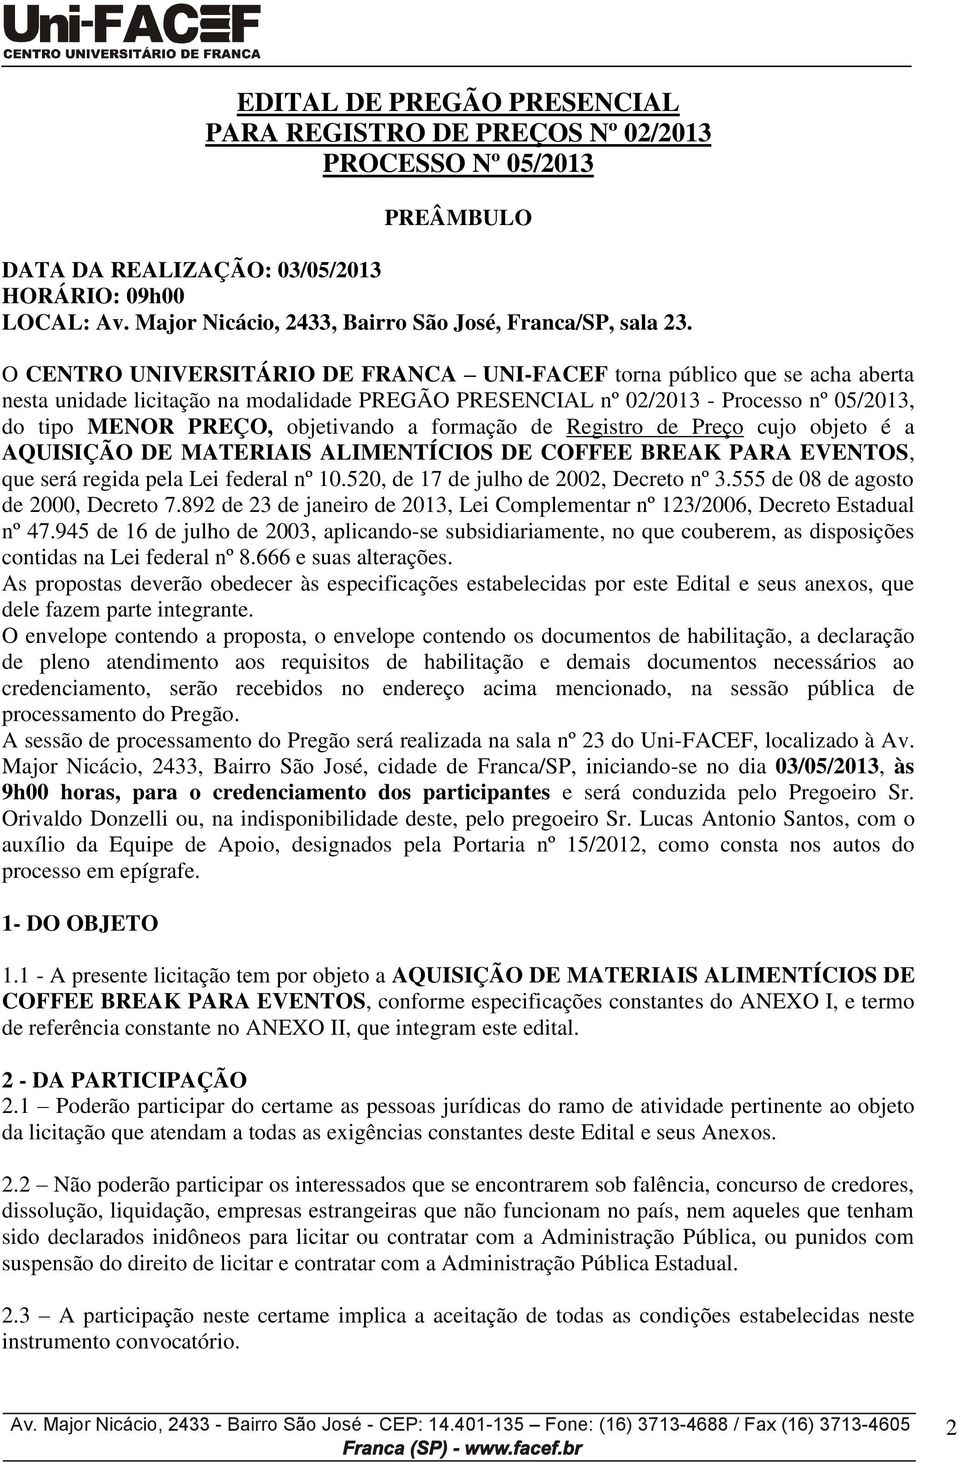 O CENTRO UNIVERSITÁRIO DE FRANCA UNI-FACEF torna público que se acha aberta nesta unidade licitação na modalidade PREGÃO PRESENCIAL nº 02/2013 - Processo nº 05/2013, do tipo MENOR PREÇO, objetivando